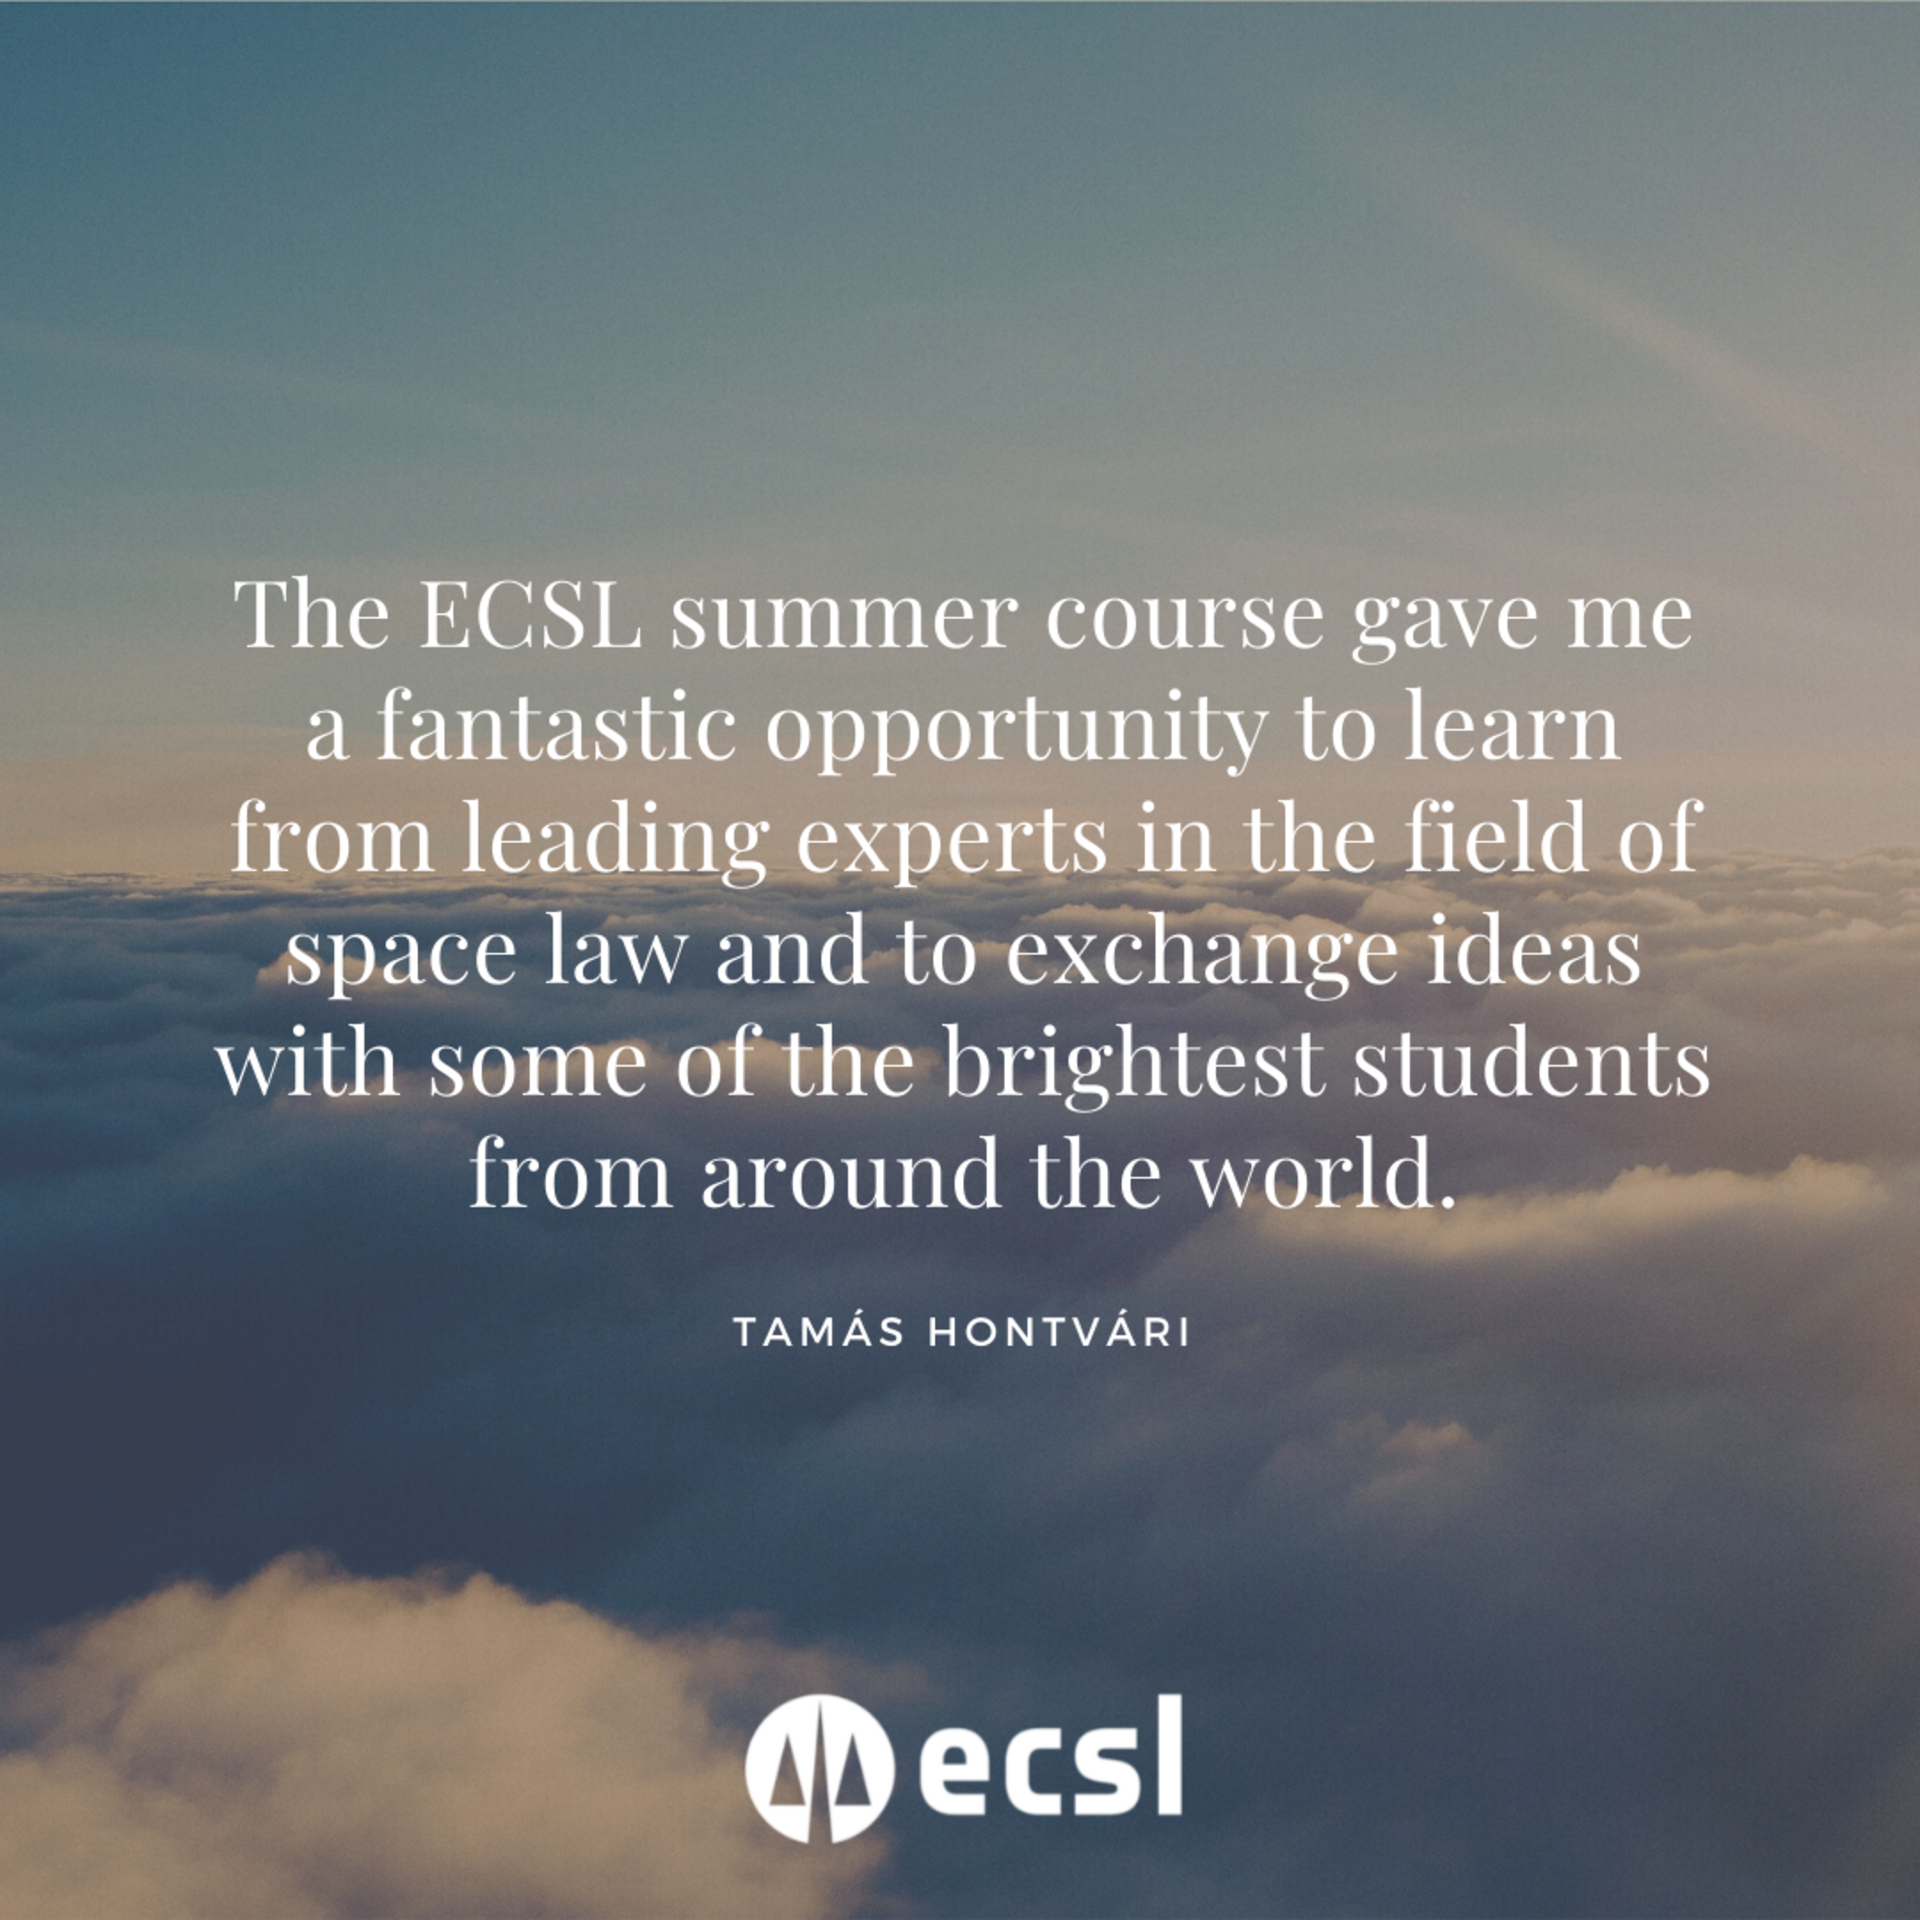 ECSL Summer Course Statement - Tamás Hontvári